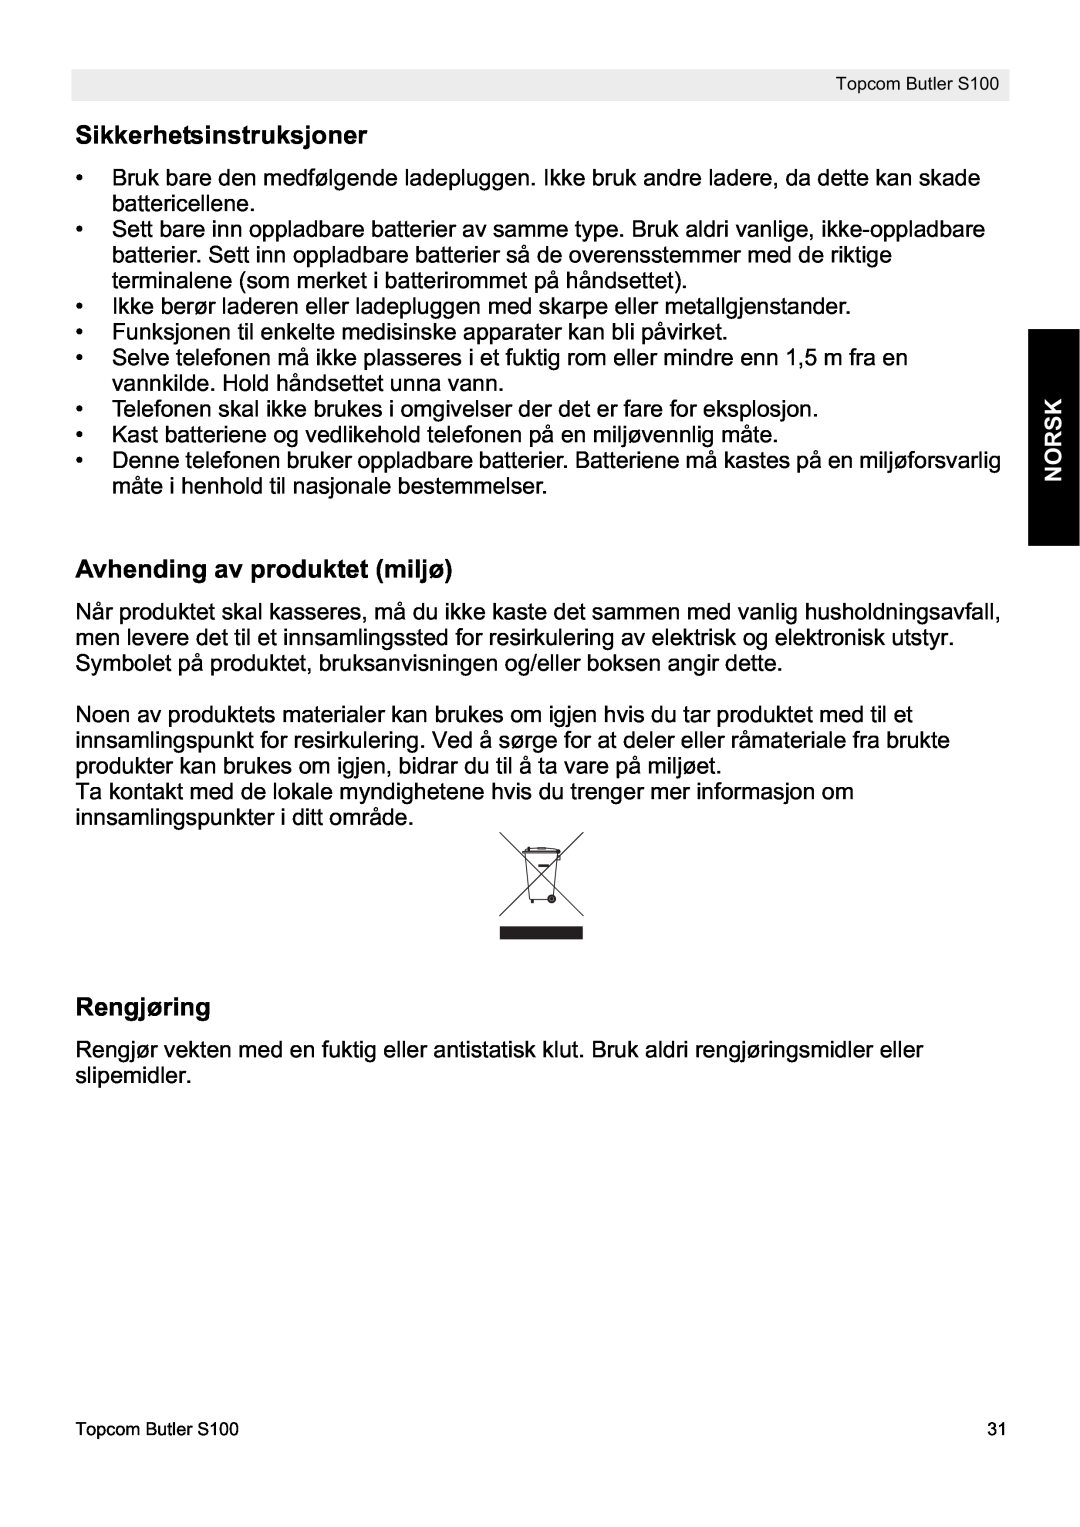 Topcom S100 manual do utilizador Sikkerhetsinstruksjoner, Avhending av produktet miljø, Rengjøring, Norsk 